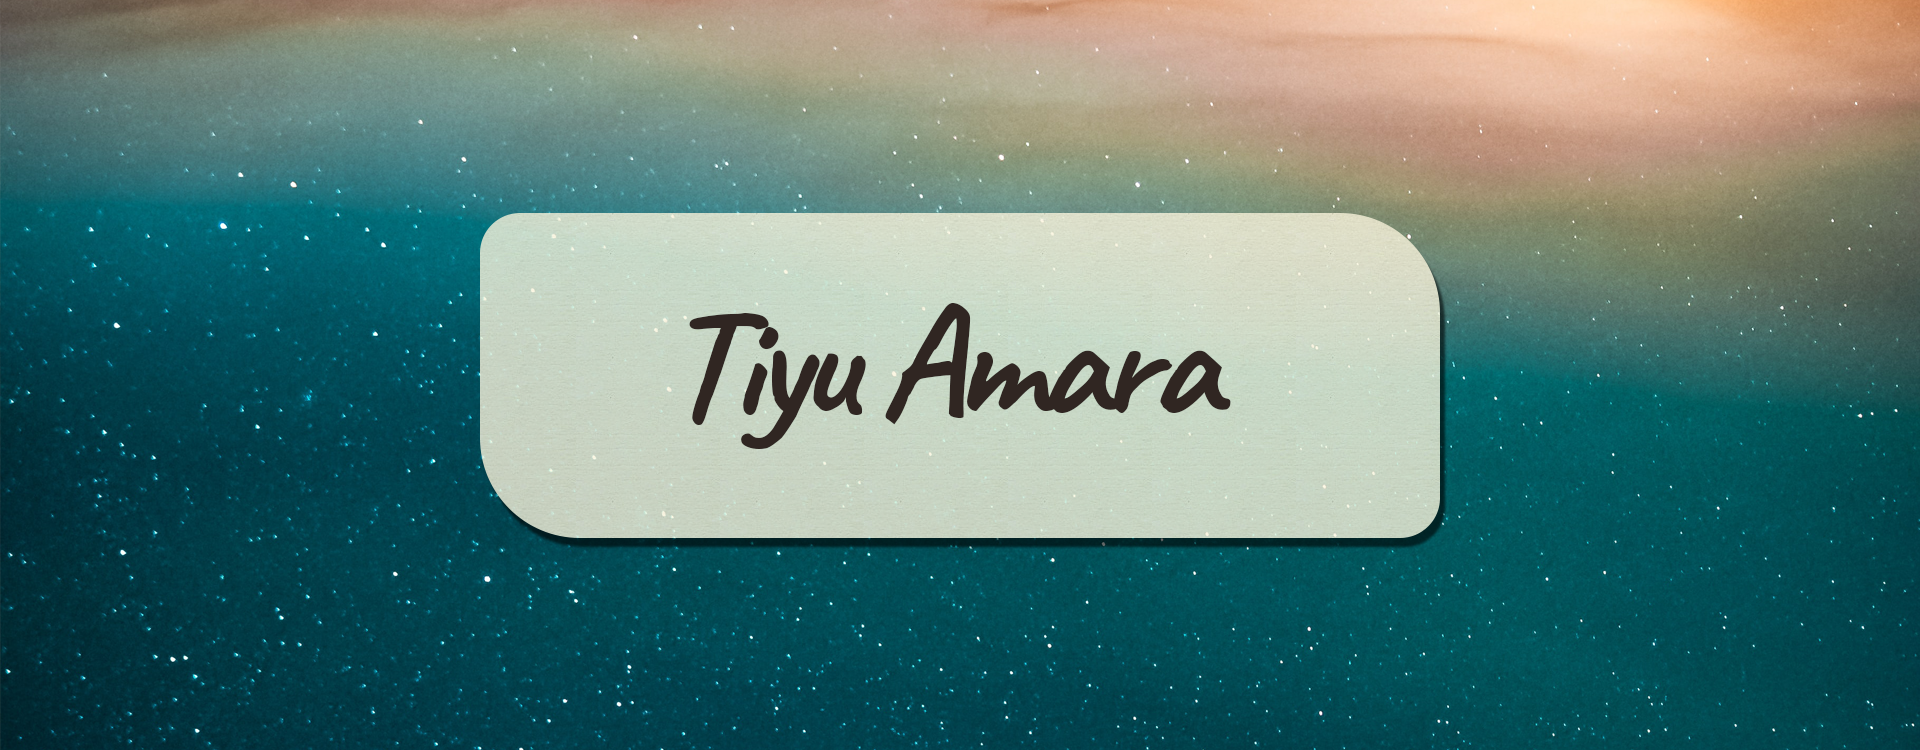 Tiyu Amara world cover